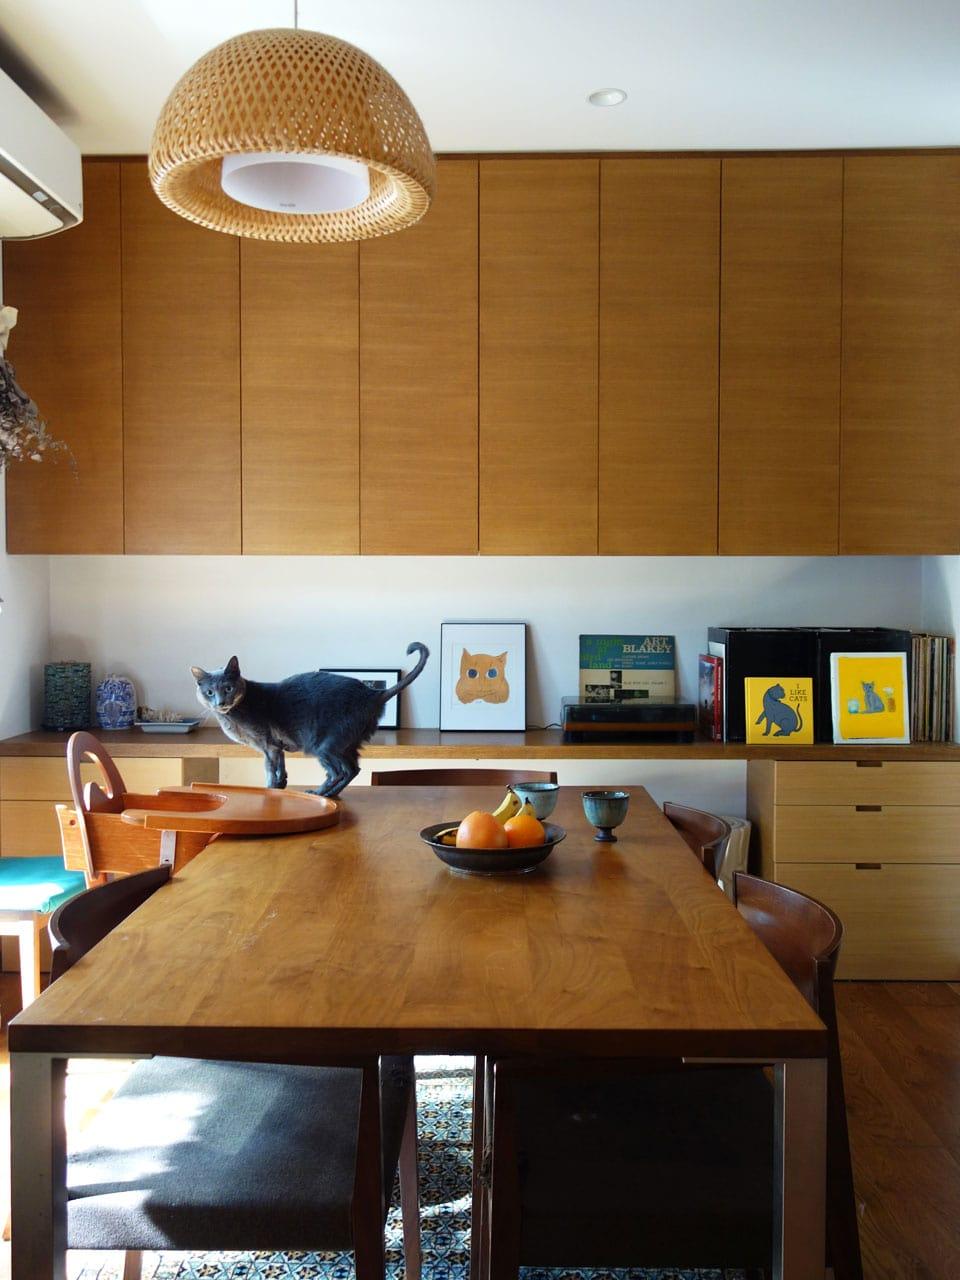 私と部屋 vol.107 デザイナーズの家具と空間が織りなす、心地よい時間。人が集う賑やかな場所へ ー 石川 明日香さん